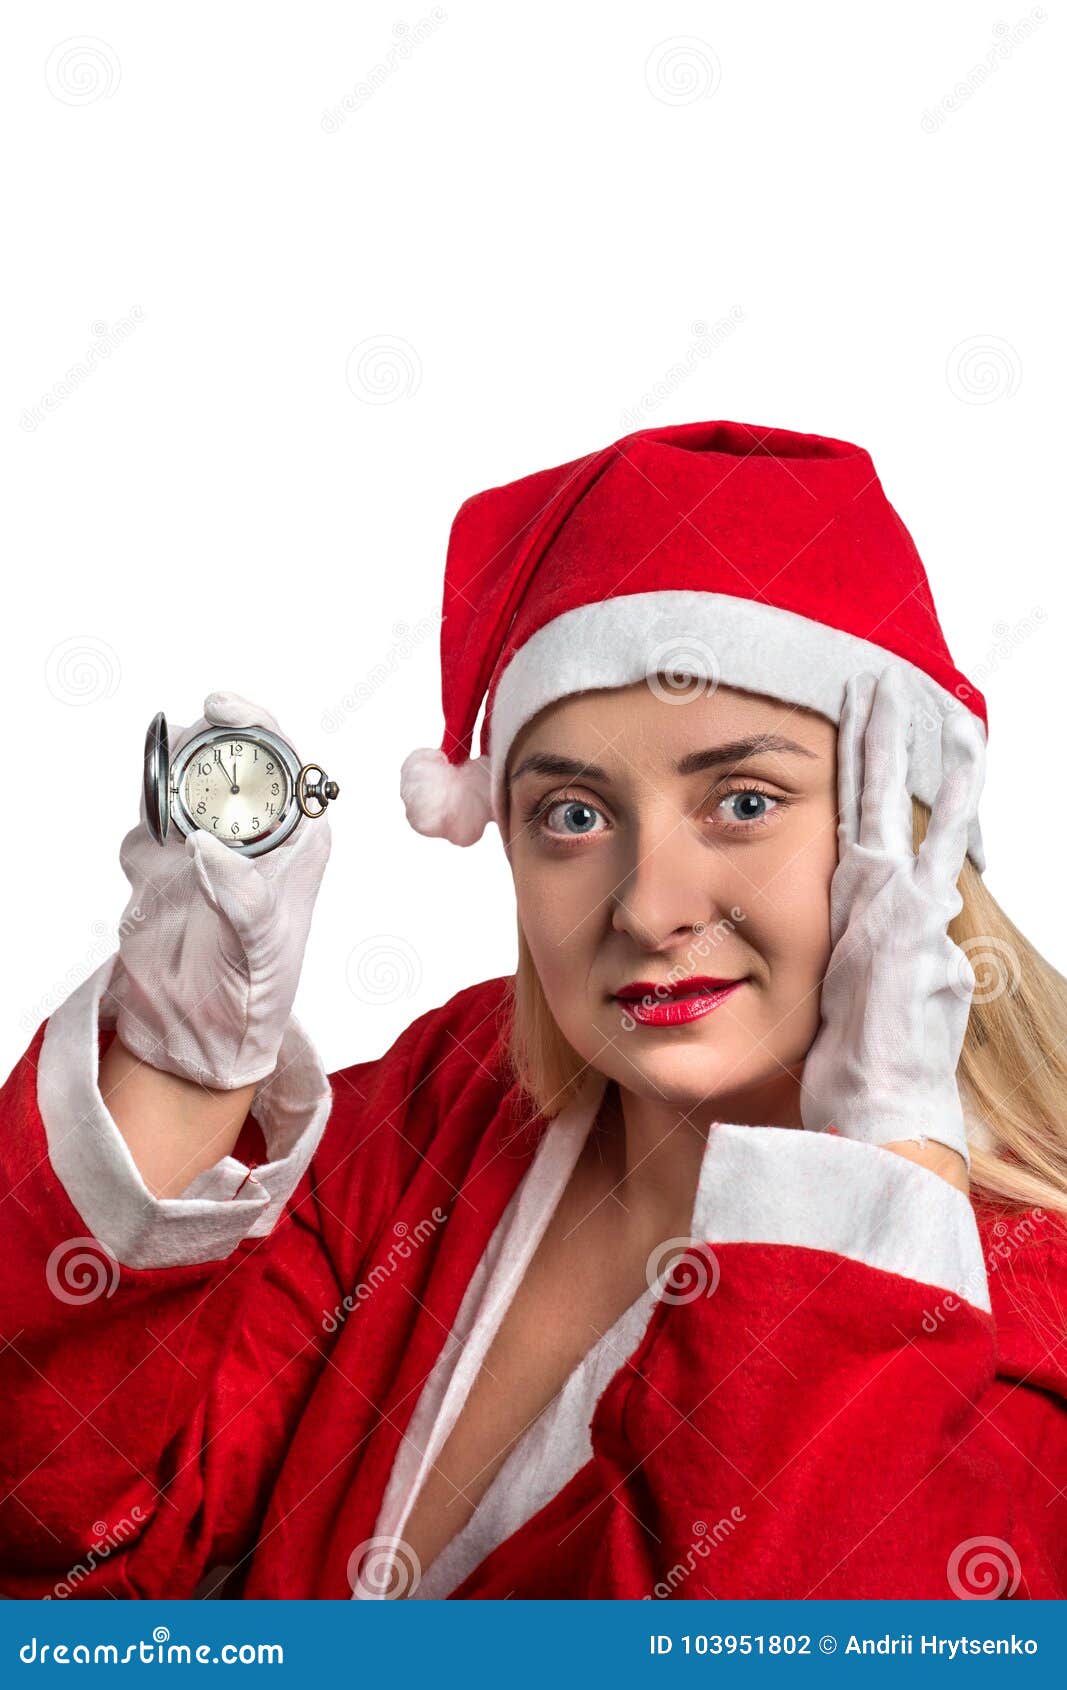 girl in santa suit